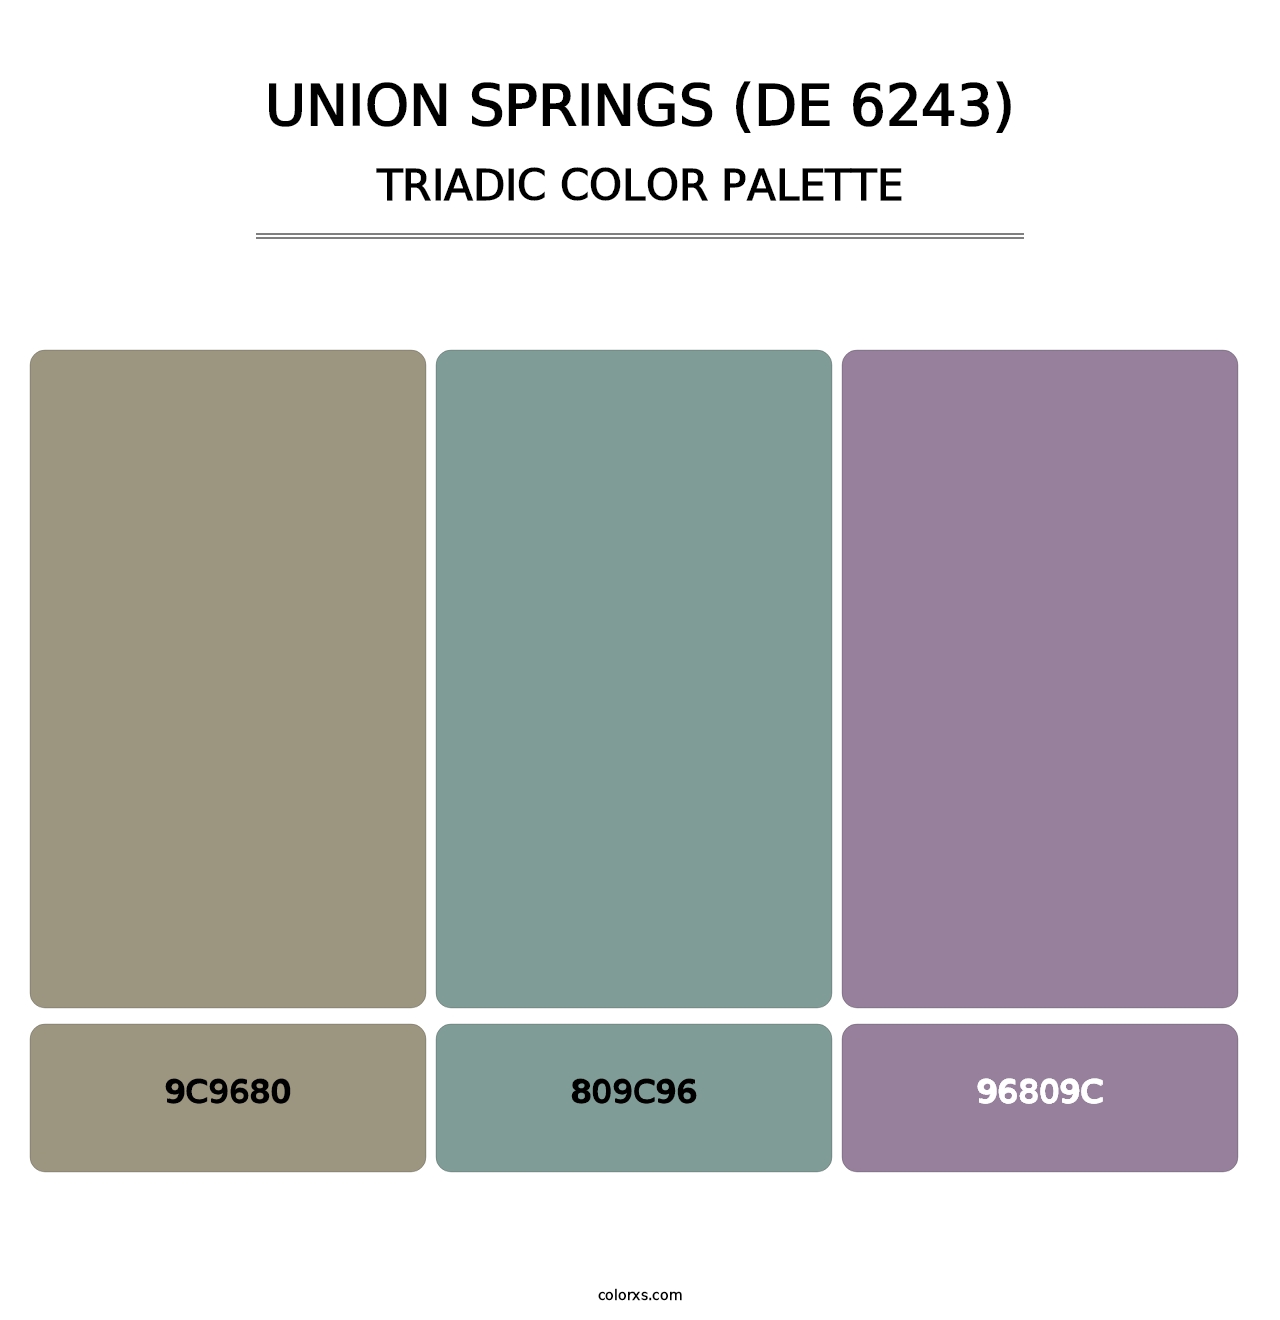 Union Springs (DE 6243) - Triadic Color Palette